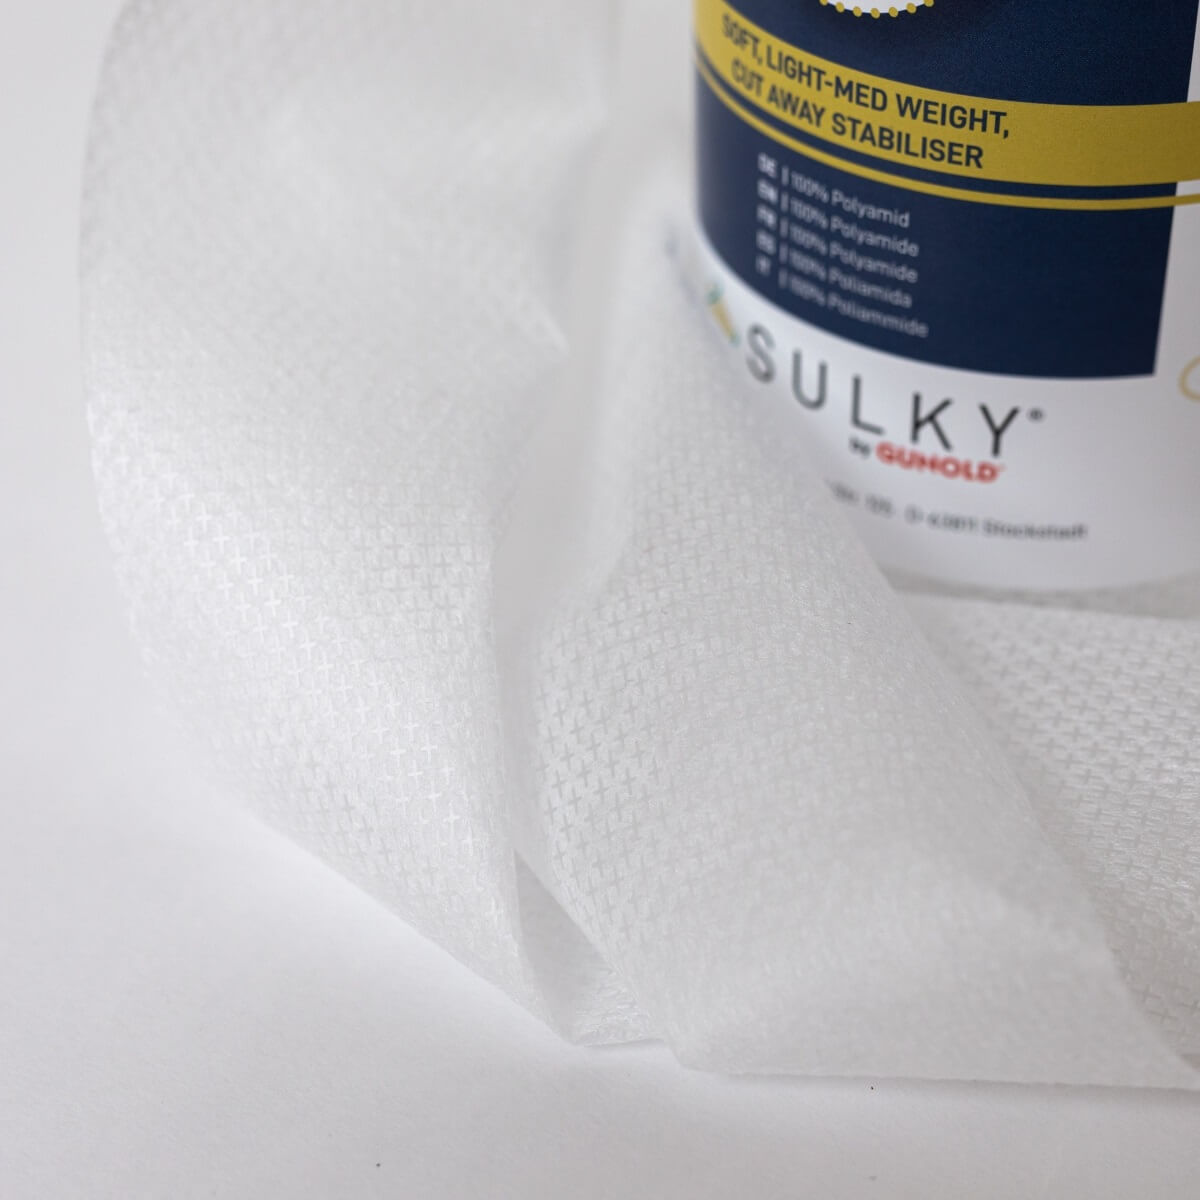 SULKY SOFT´N SHEER PLUS white, 25cm x 5m